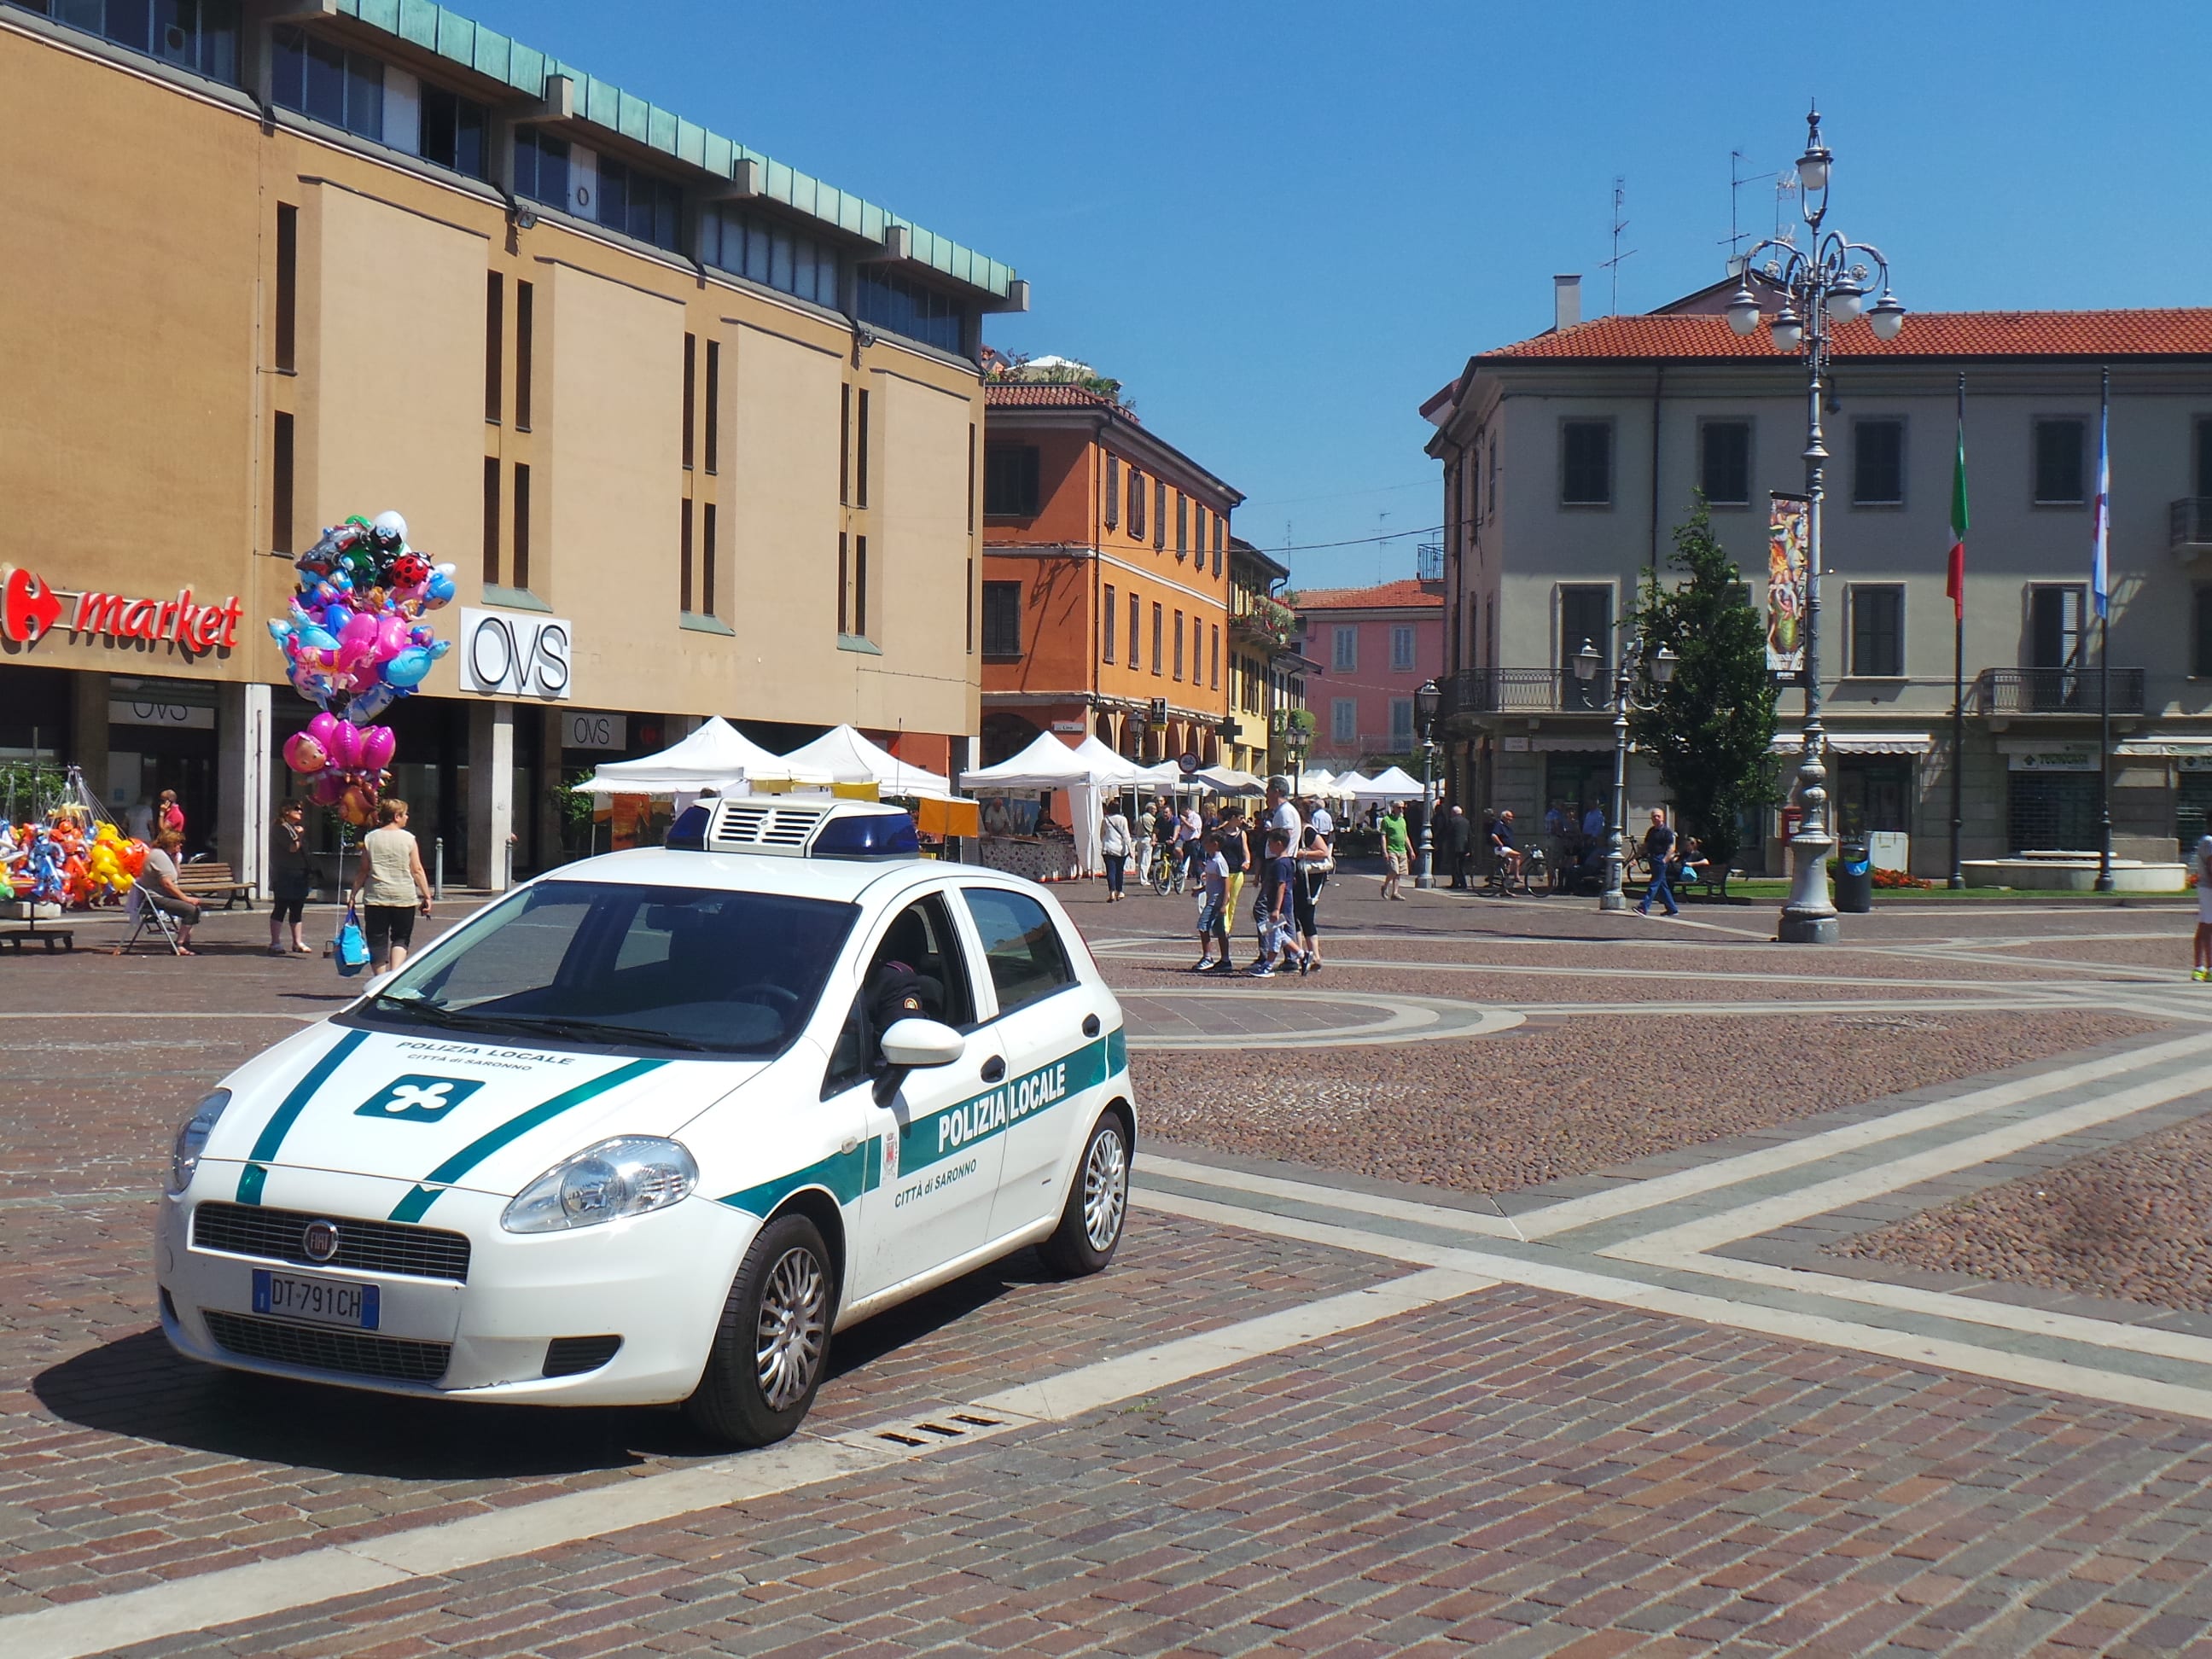 Ubriaco in corso Italia, soccorso dall’ambulanza